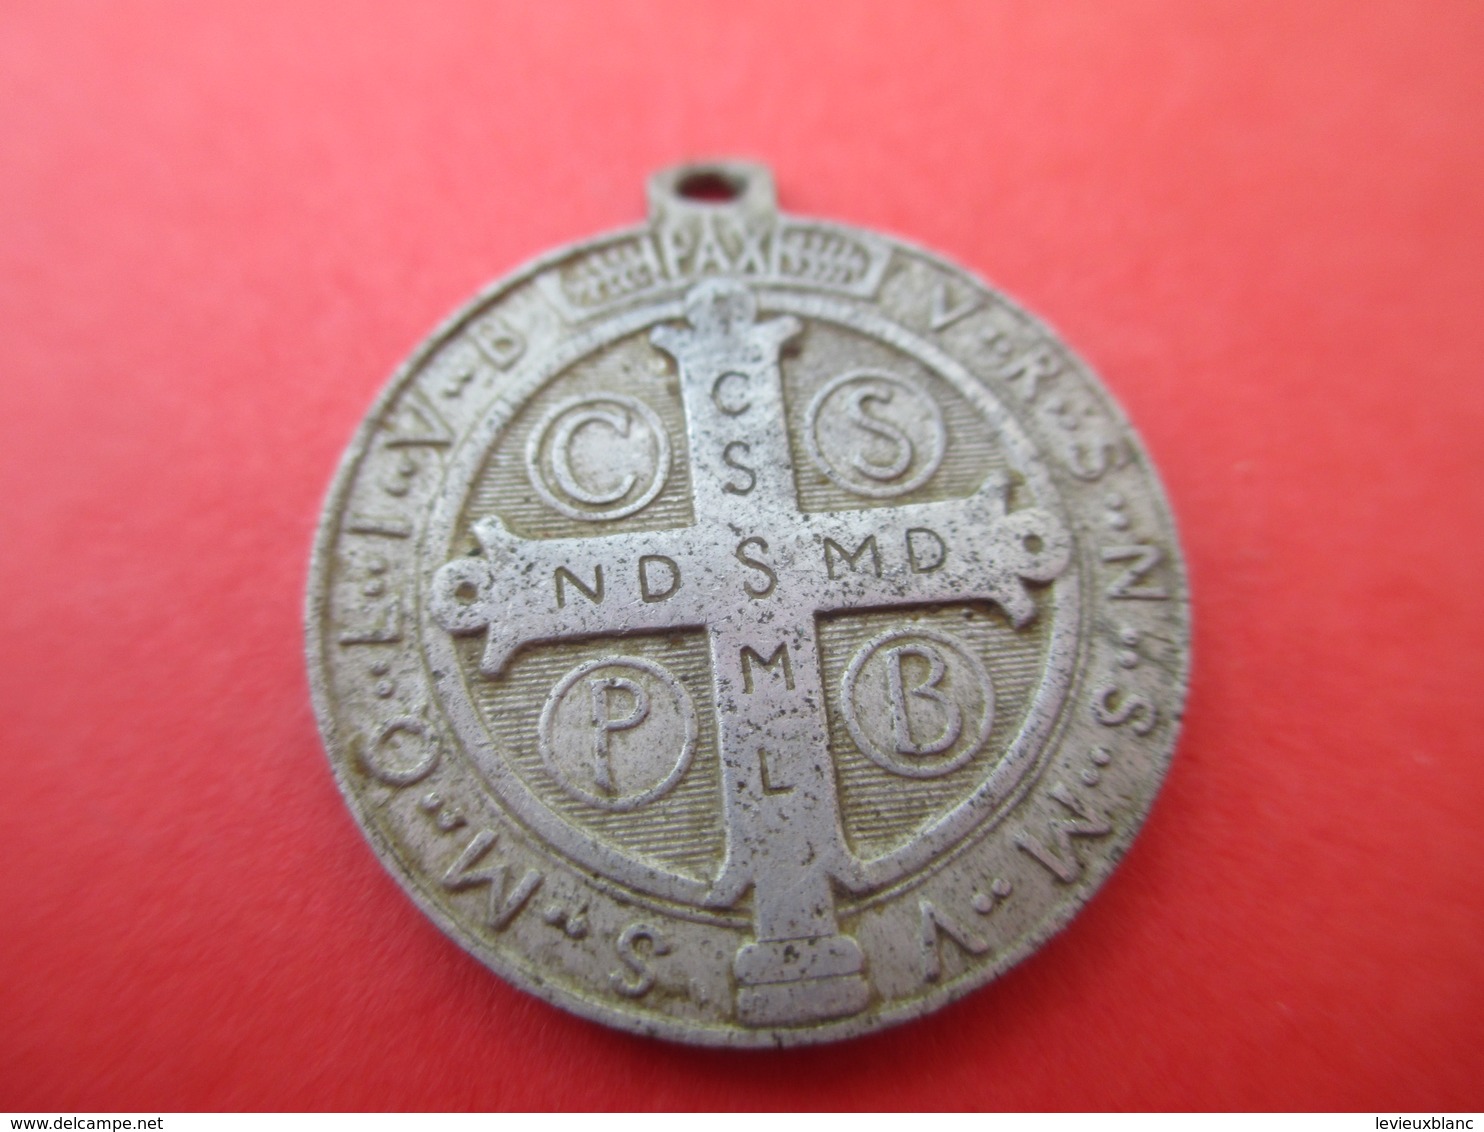 Petite Médaille Religieuse Ancienne/Saint Benoit/Aluminium/Fin XIXéme      CAN594 - Religion & Esotérisme